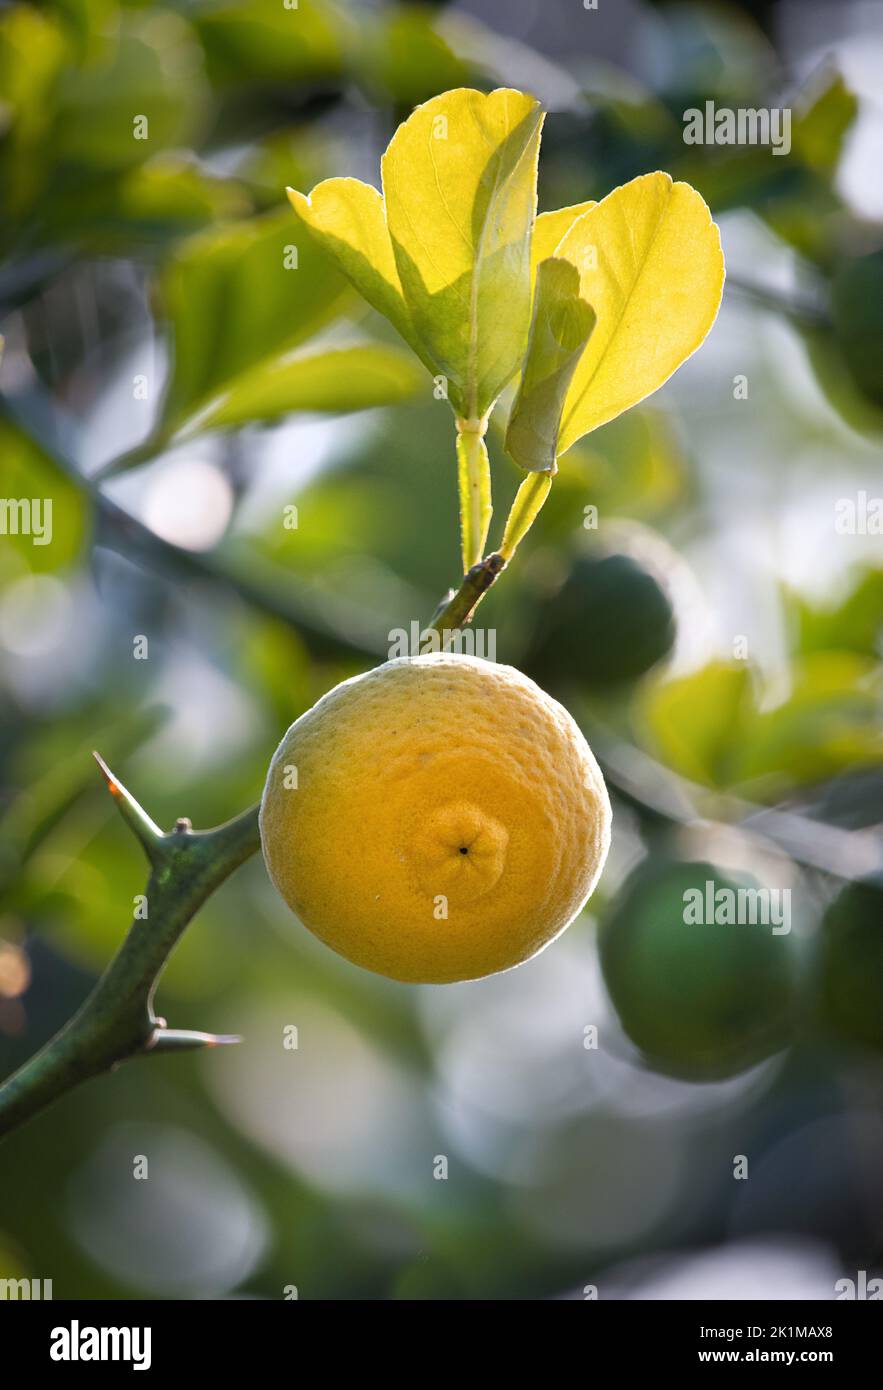 Petits citrons ronds jaunes, citrus limon, accrochés sur un citronnier avec des feuilles et des épines au soleil, été ou automne, Lancaster, Pennsylvanie Banque D'Images